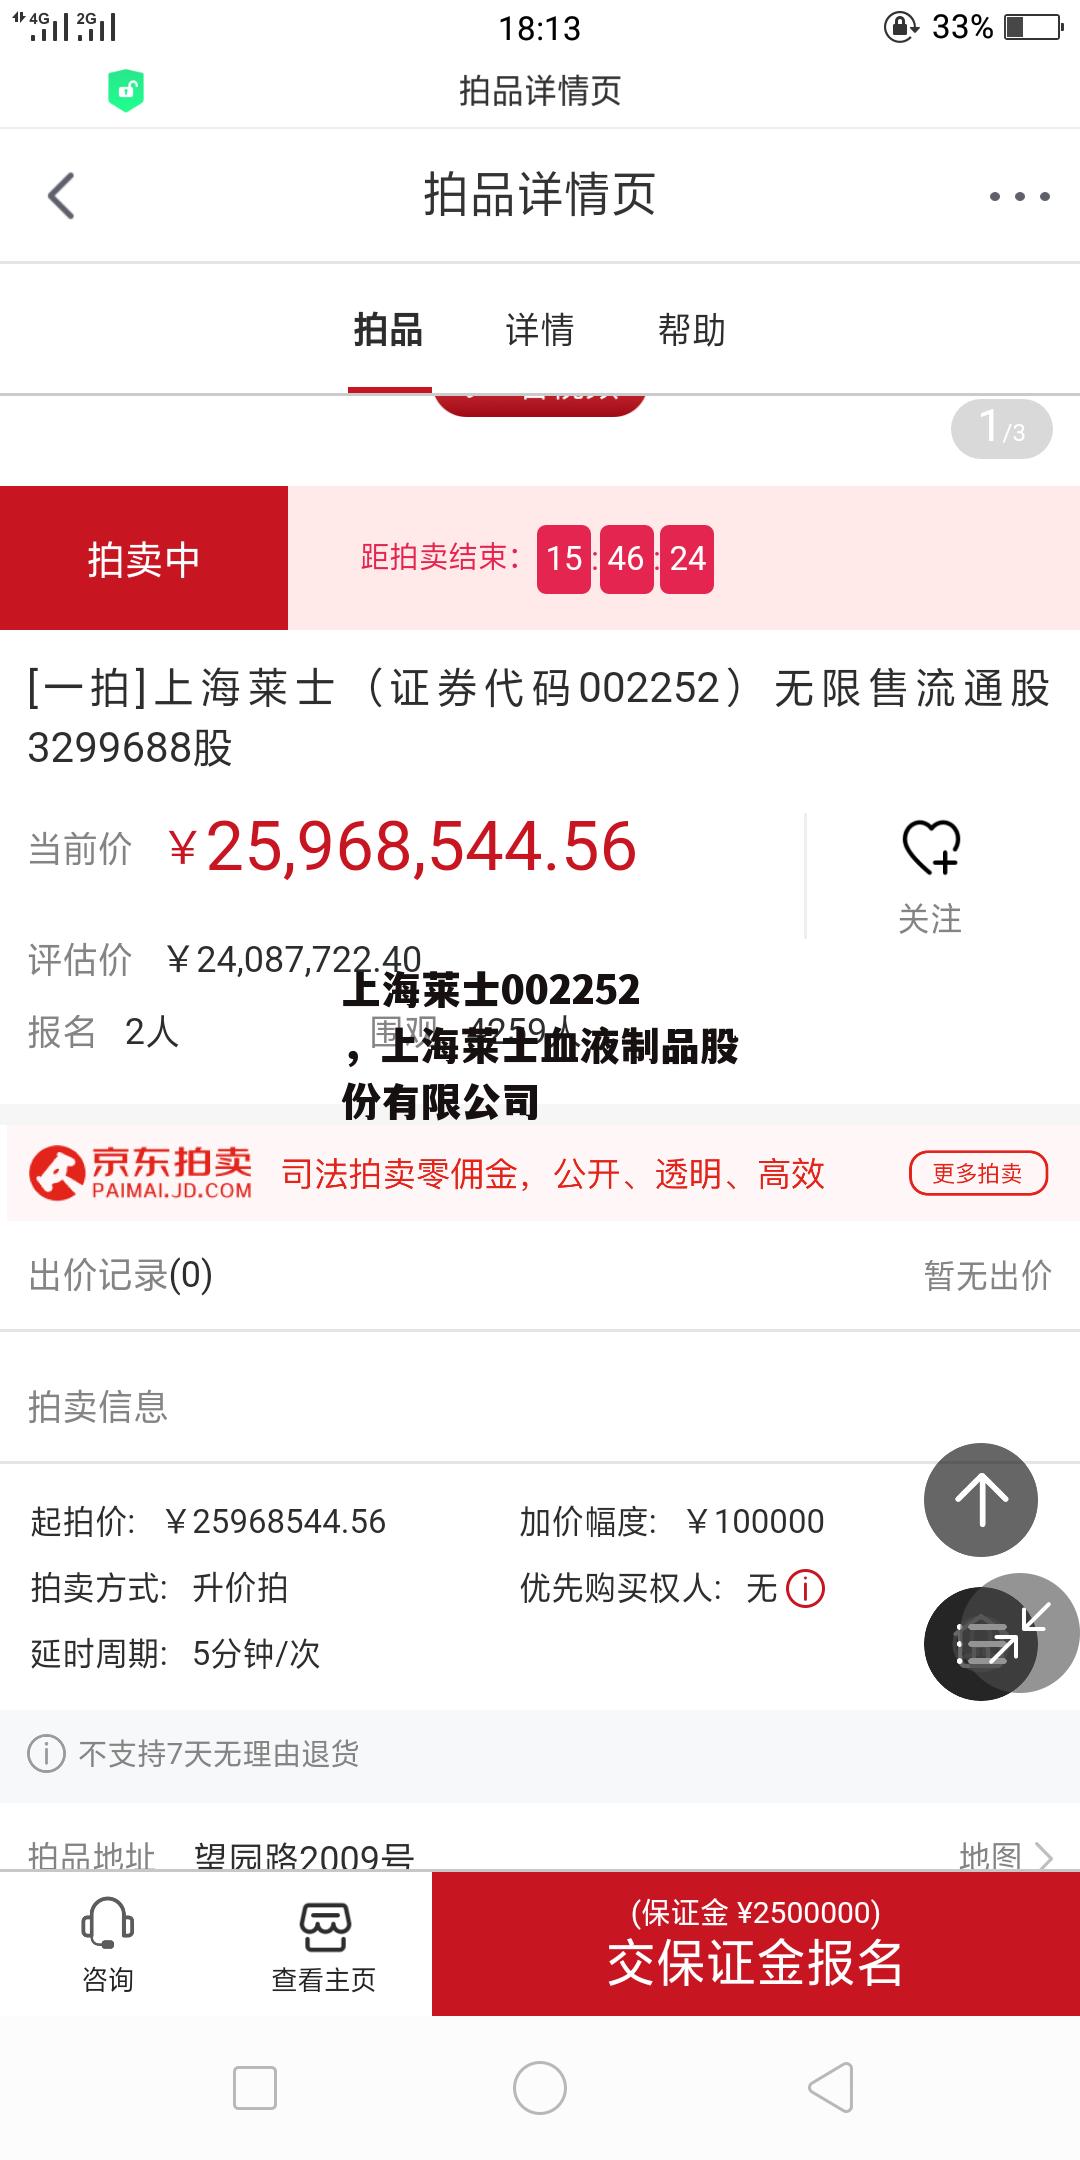 上海莱士002252，上海莱士血液制品股份有限公司